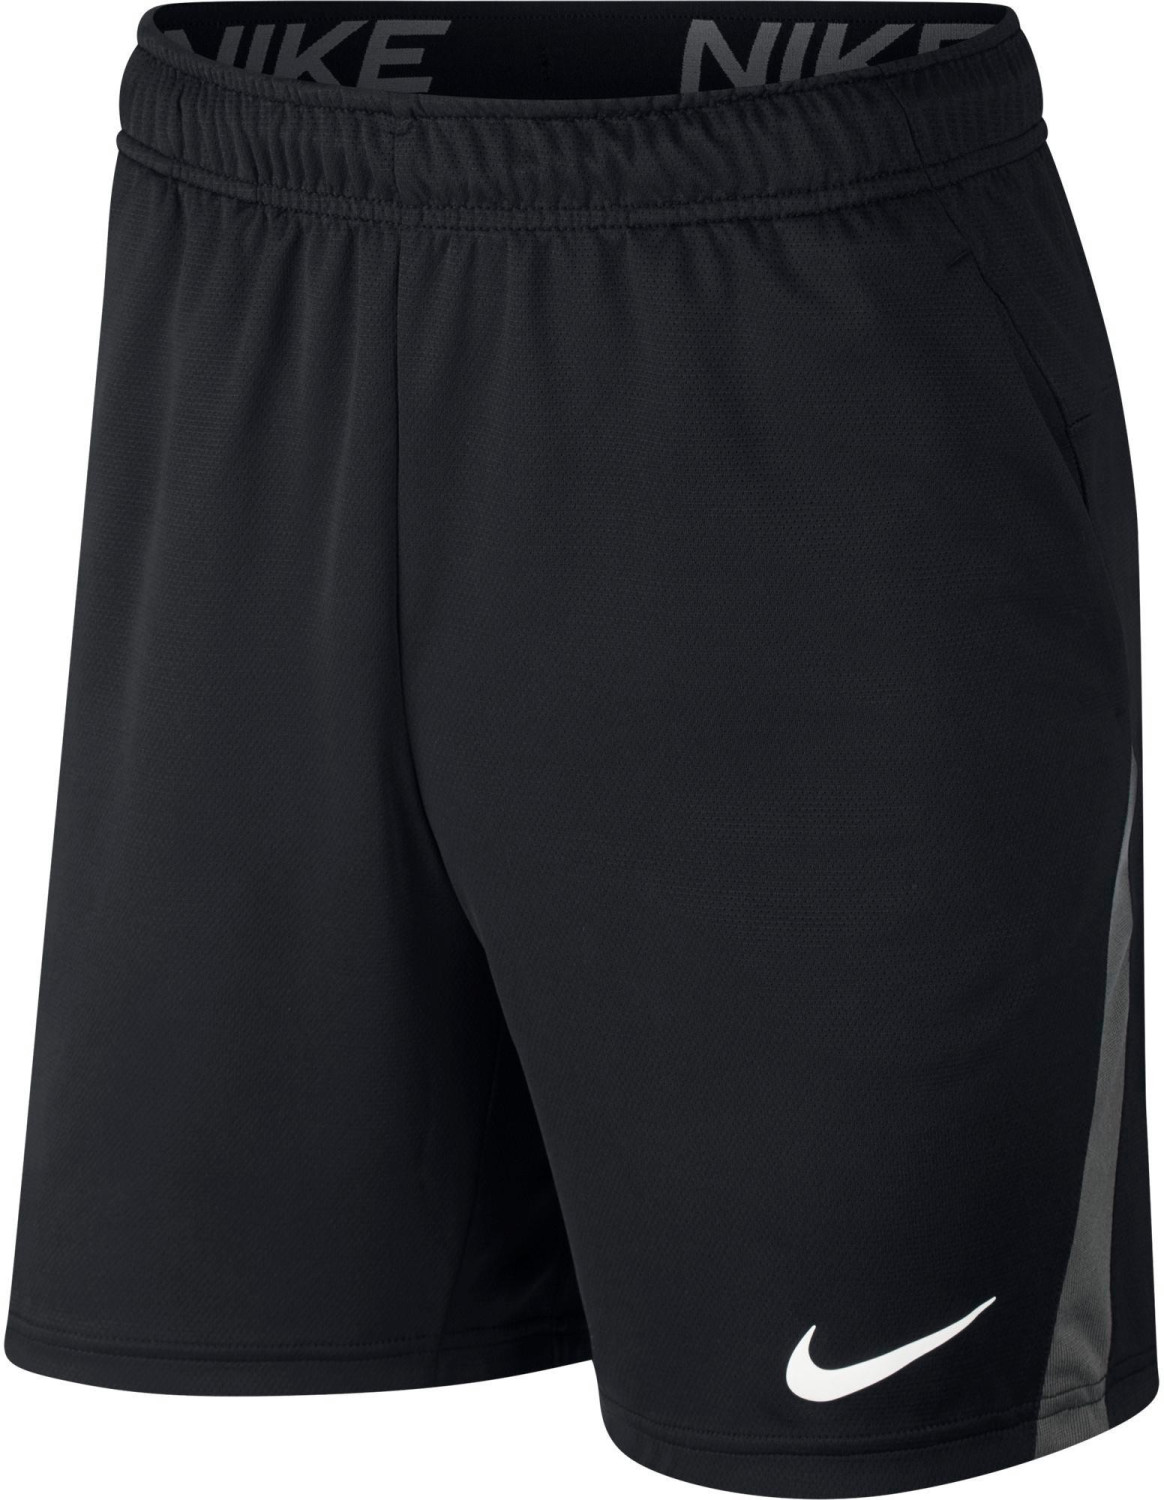 Nike Dri-FIT Men's Training Shorts ab 